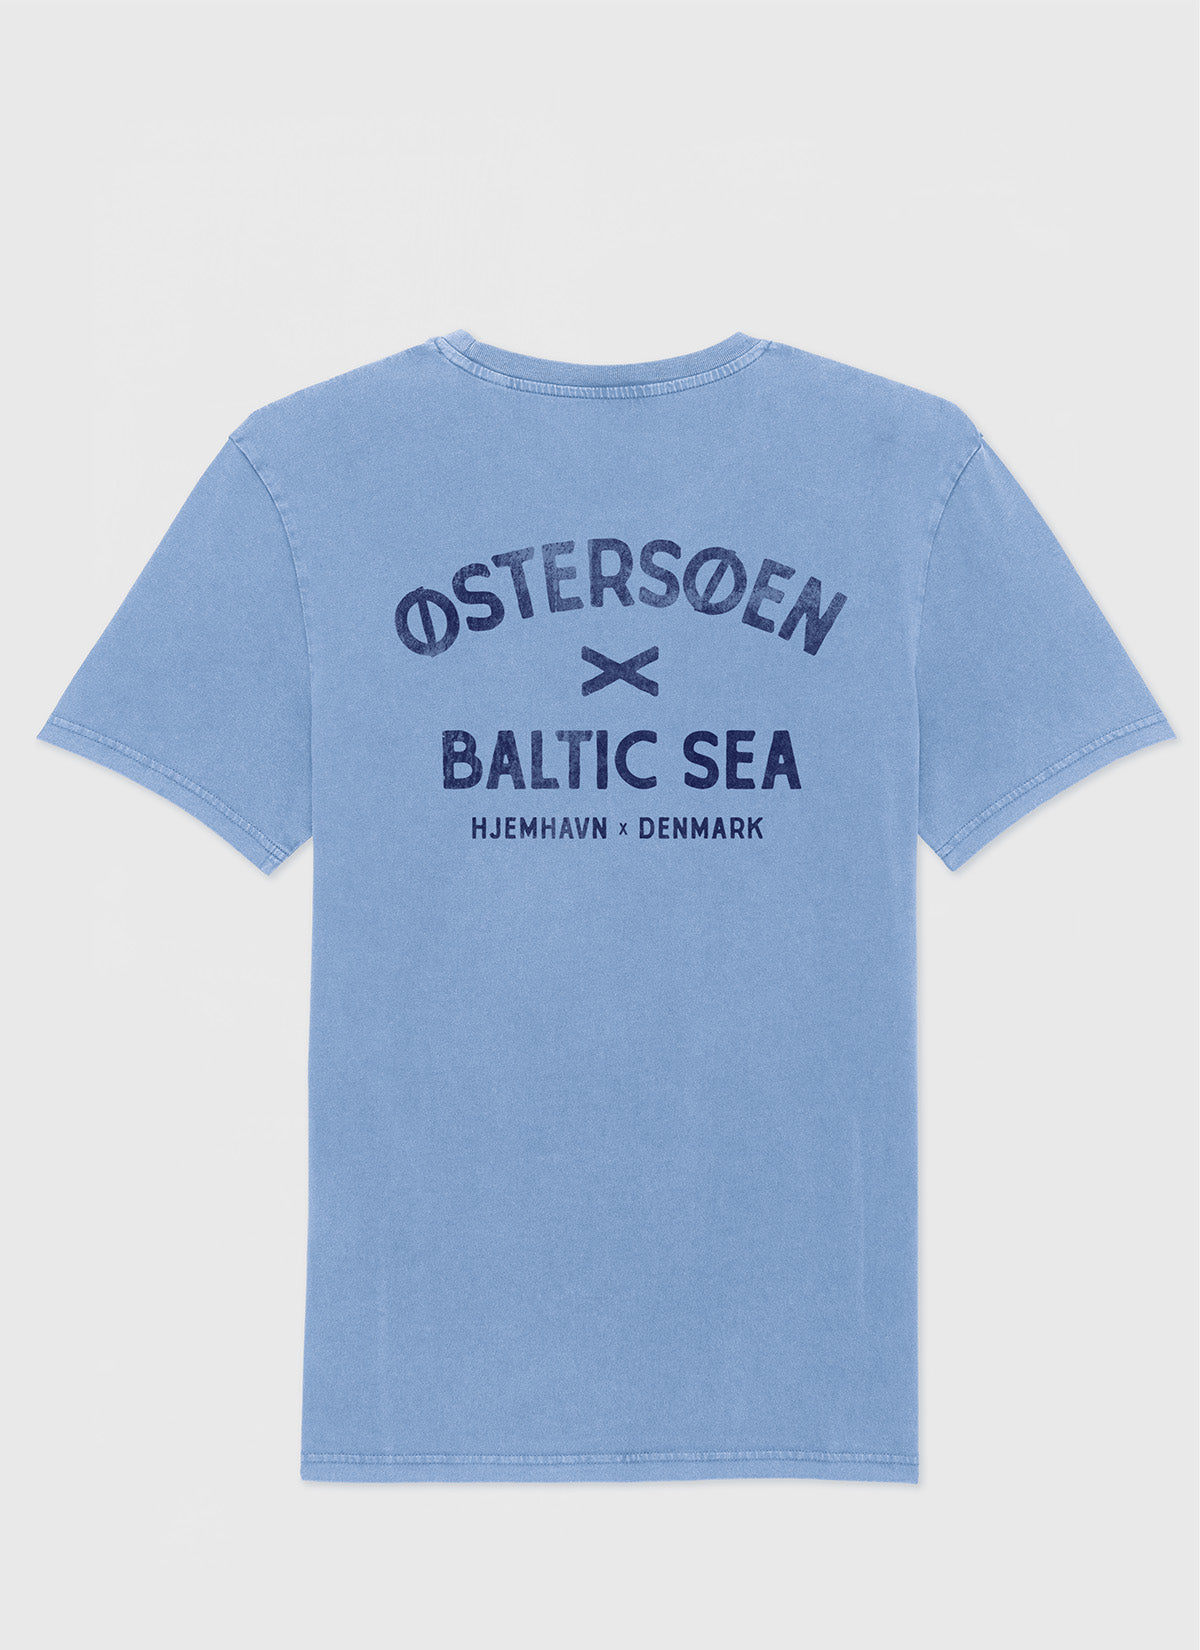 Tee "Østersøen - Baltic Sea"